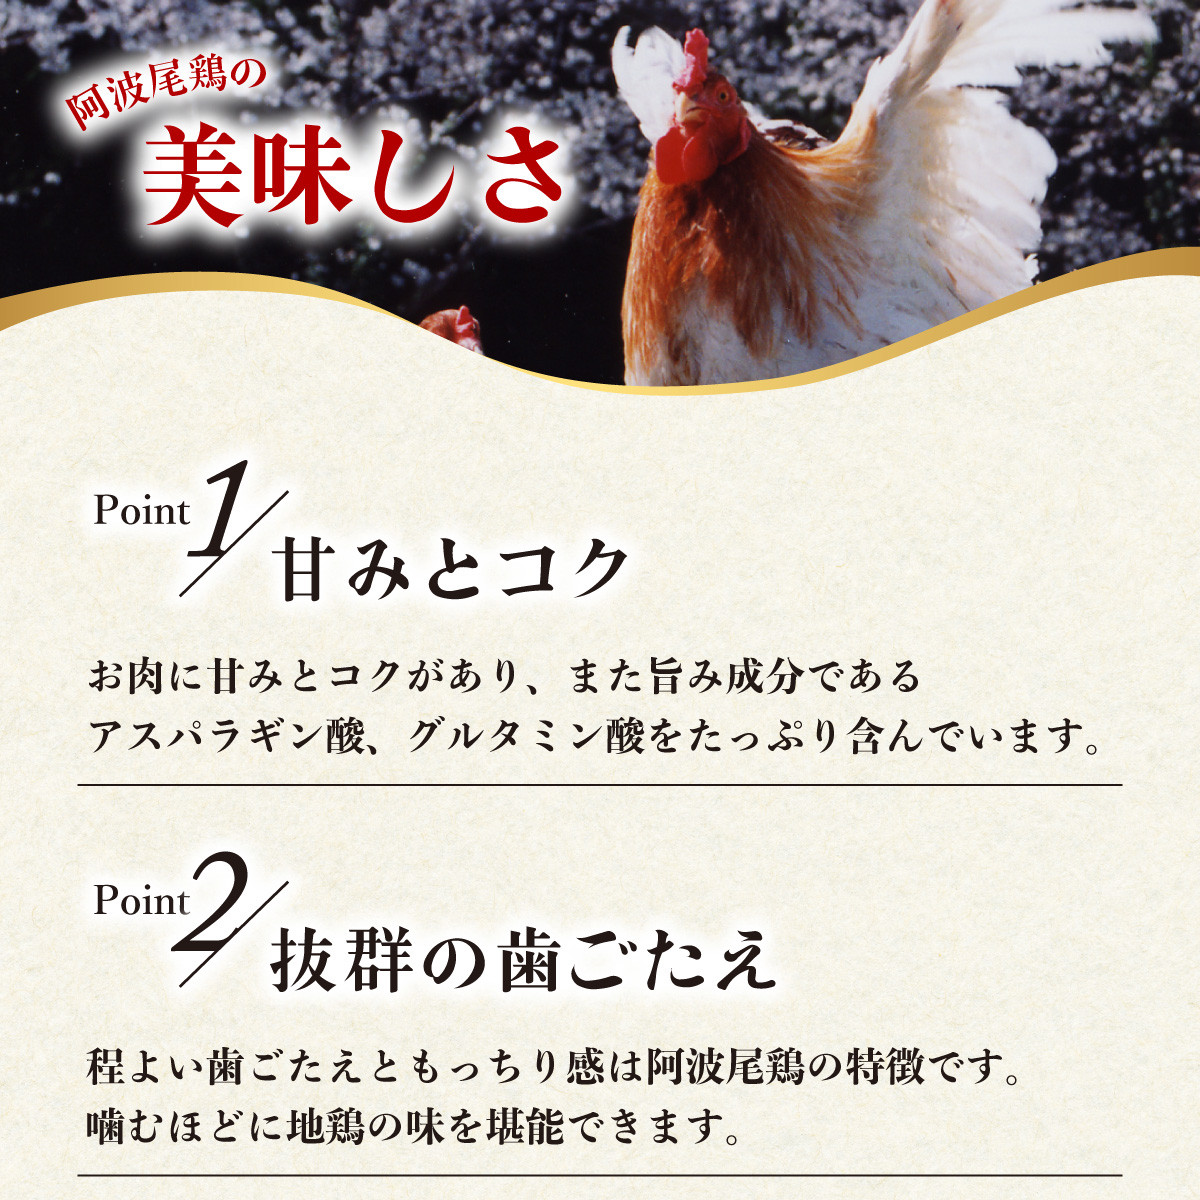 【阿波尾鶏バラ凍結定期便 3か月連続】阿波尾鶏 もも肉 切り身 バラ凍結 1.5kg×3回 計4.5kg 鶏肉 鶏もも 阿波尾鶏 冷凍 地鶏